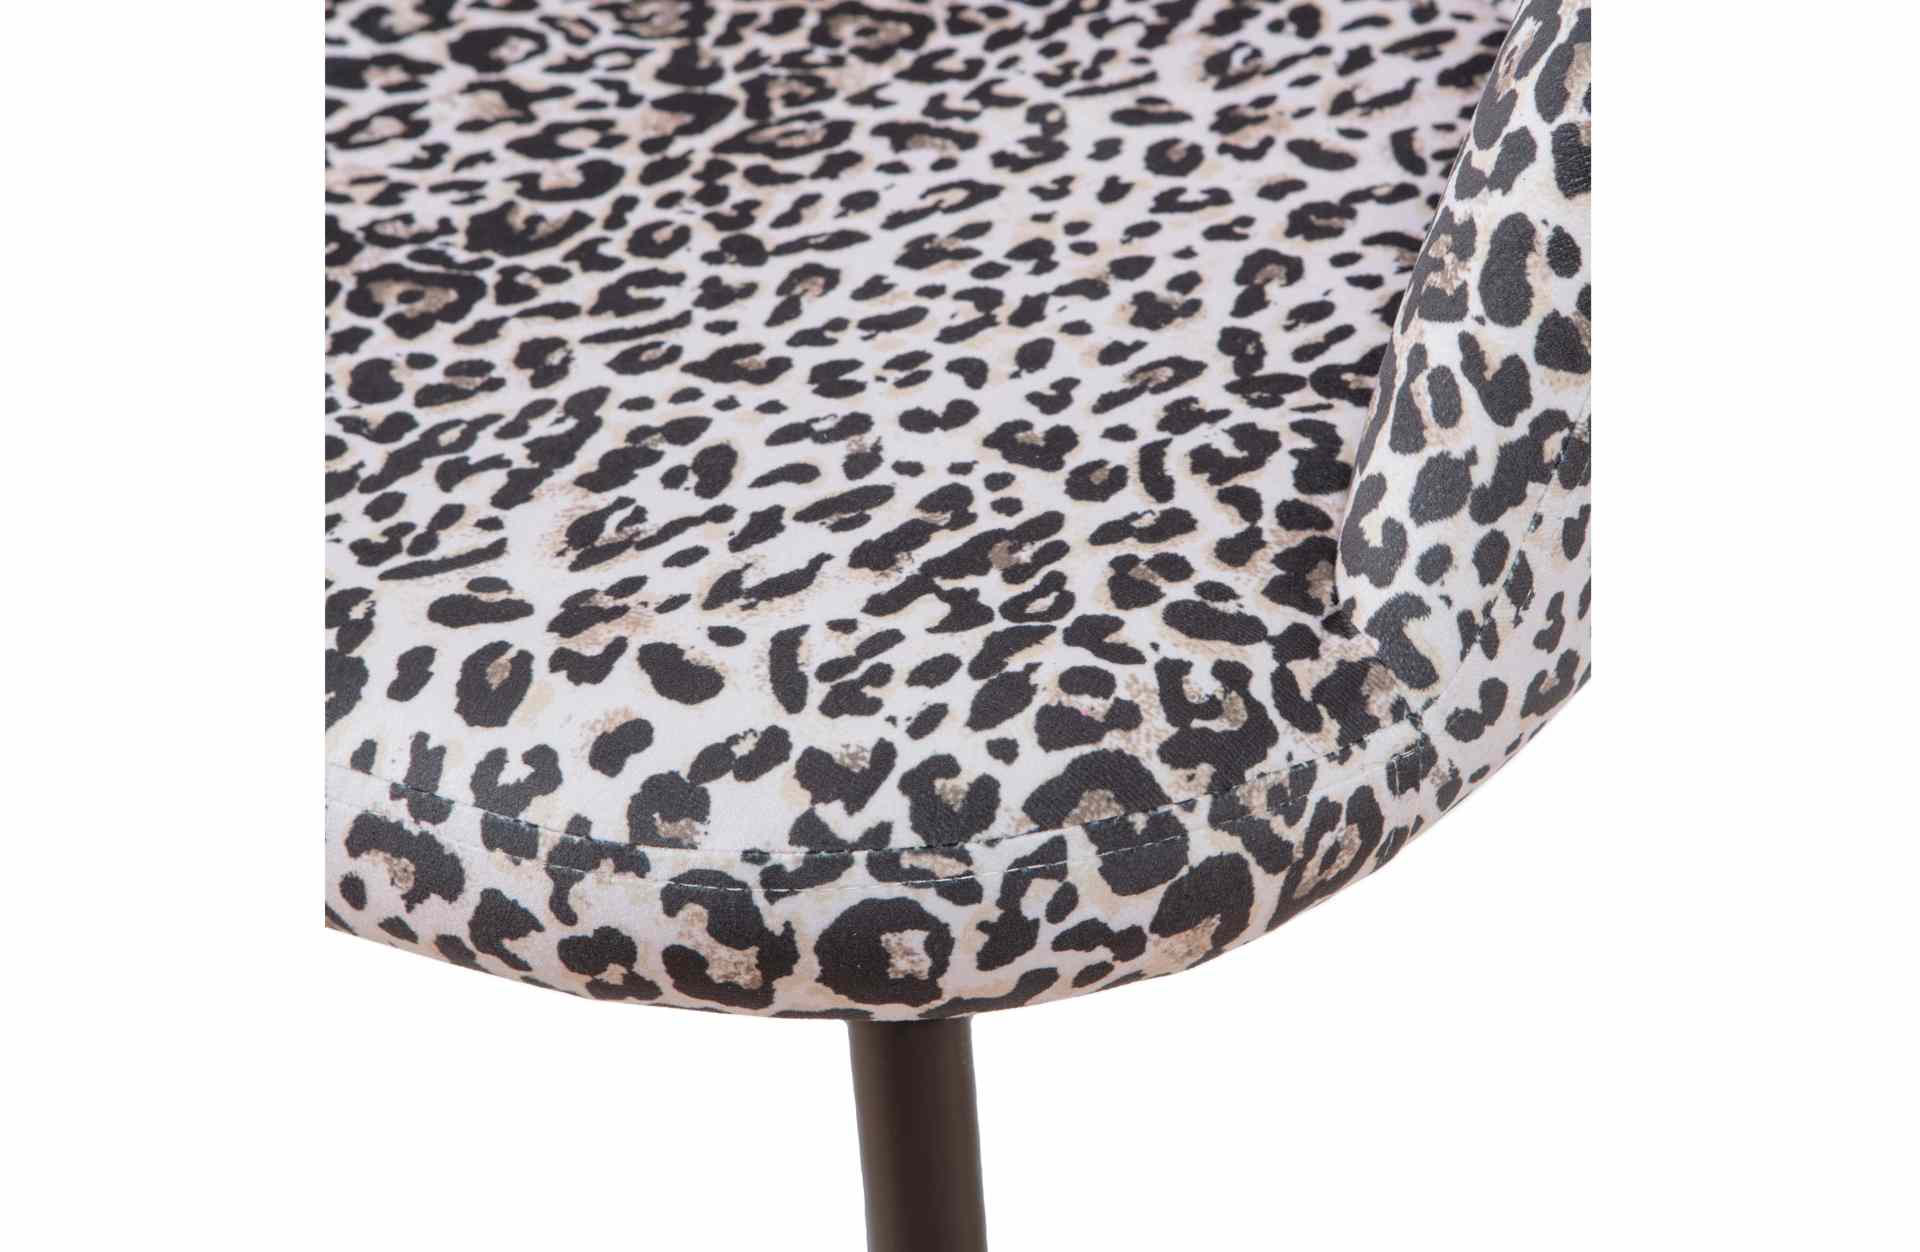 Der Esszimmerstuhl Noortje überzeugt mit seinem klassischen Design. Gefertigt wurde er aus Kunststofffasern, welche einen einen Panther Look besitzen. Das Gestell ist aus Metall und hat eine schwarze Farbe. Die Sitzhöhe beträgt 45 cm.